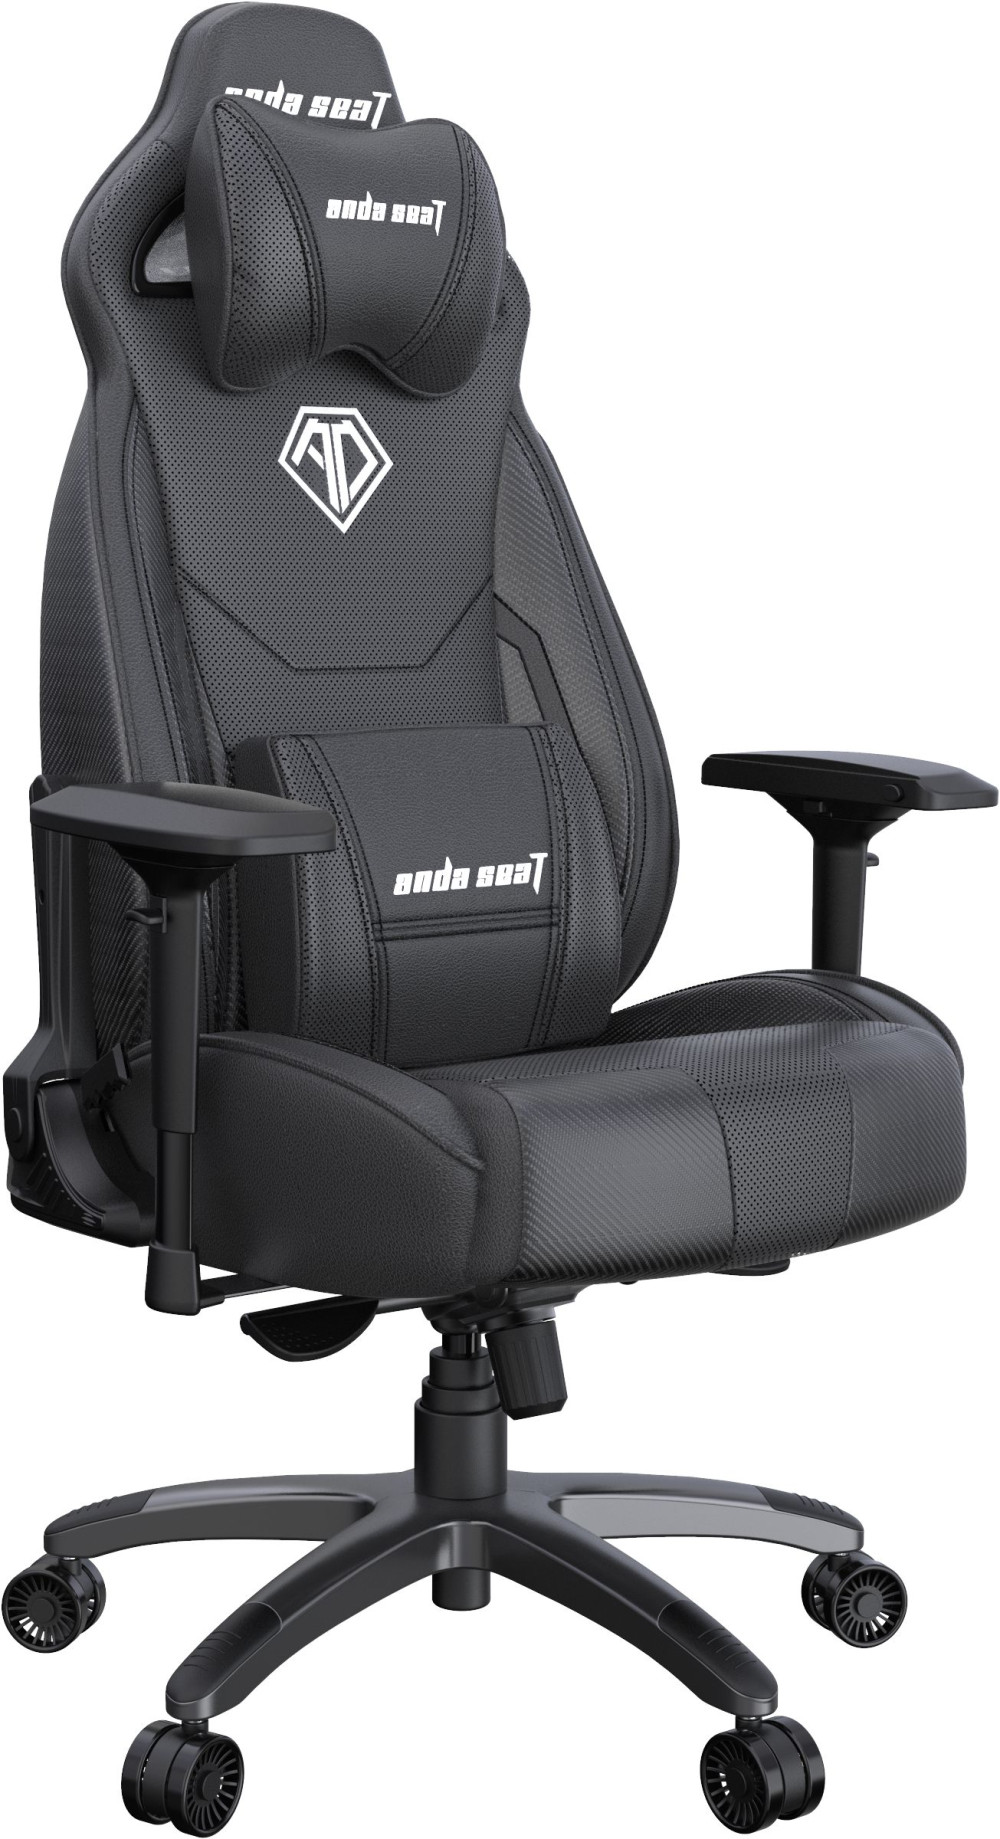   Anda Seat Throne Series Premium ()